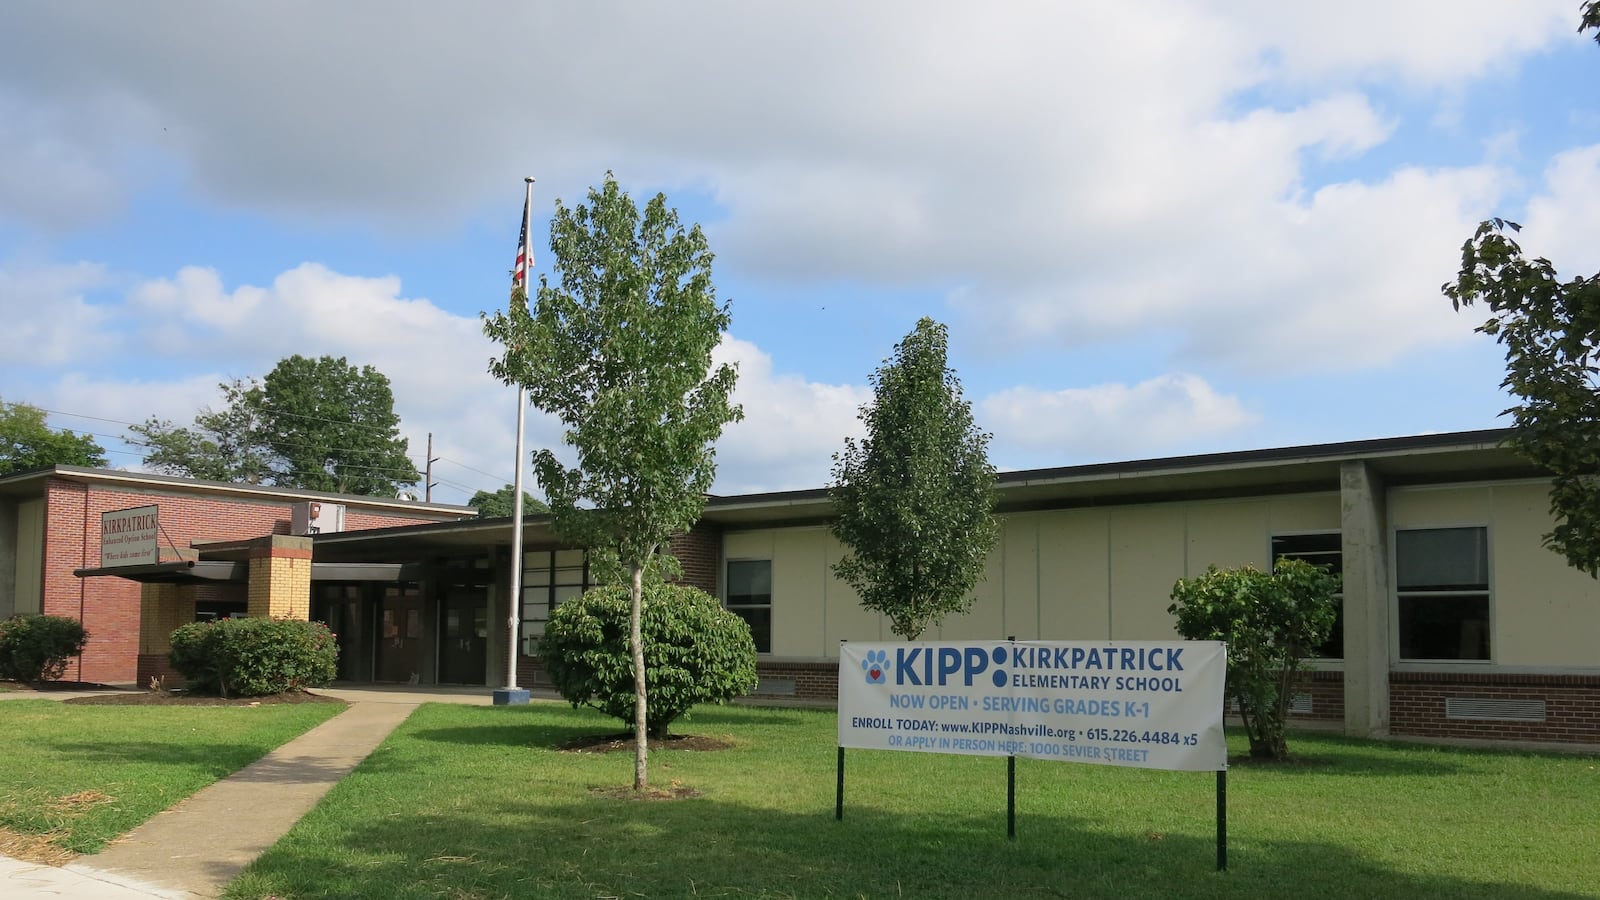 KIPP's latest school in Nashville is Kirkpatrick Elementary in East Nashville.